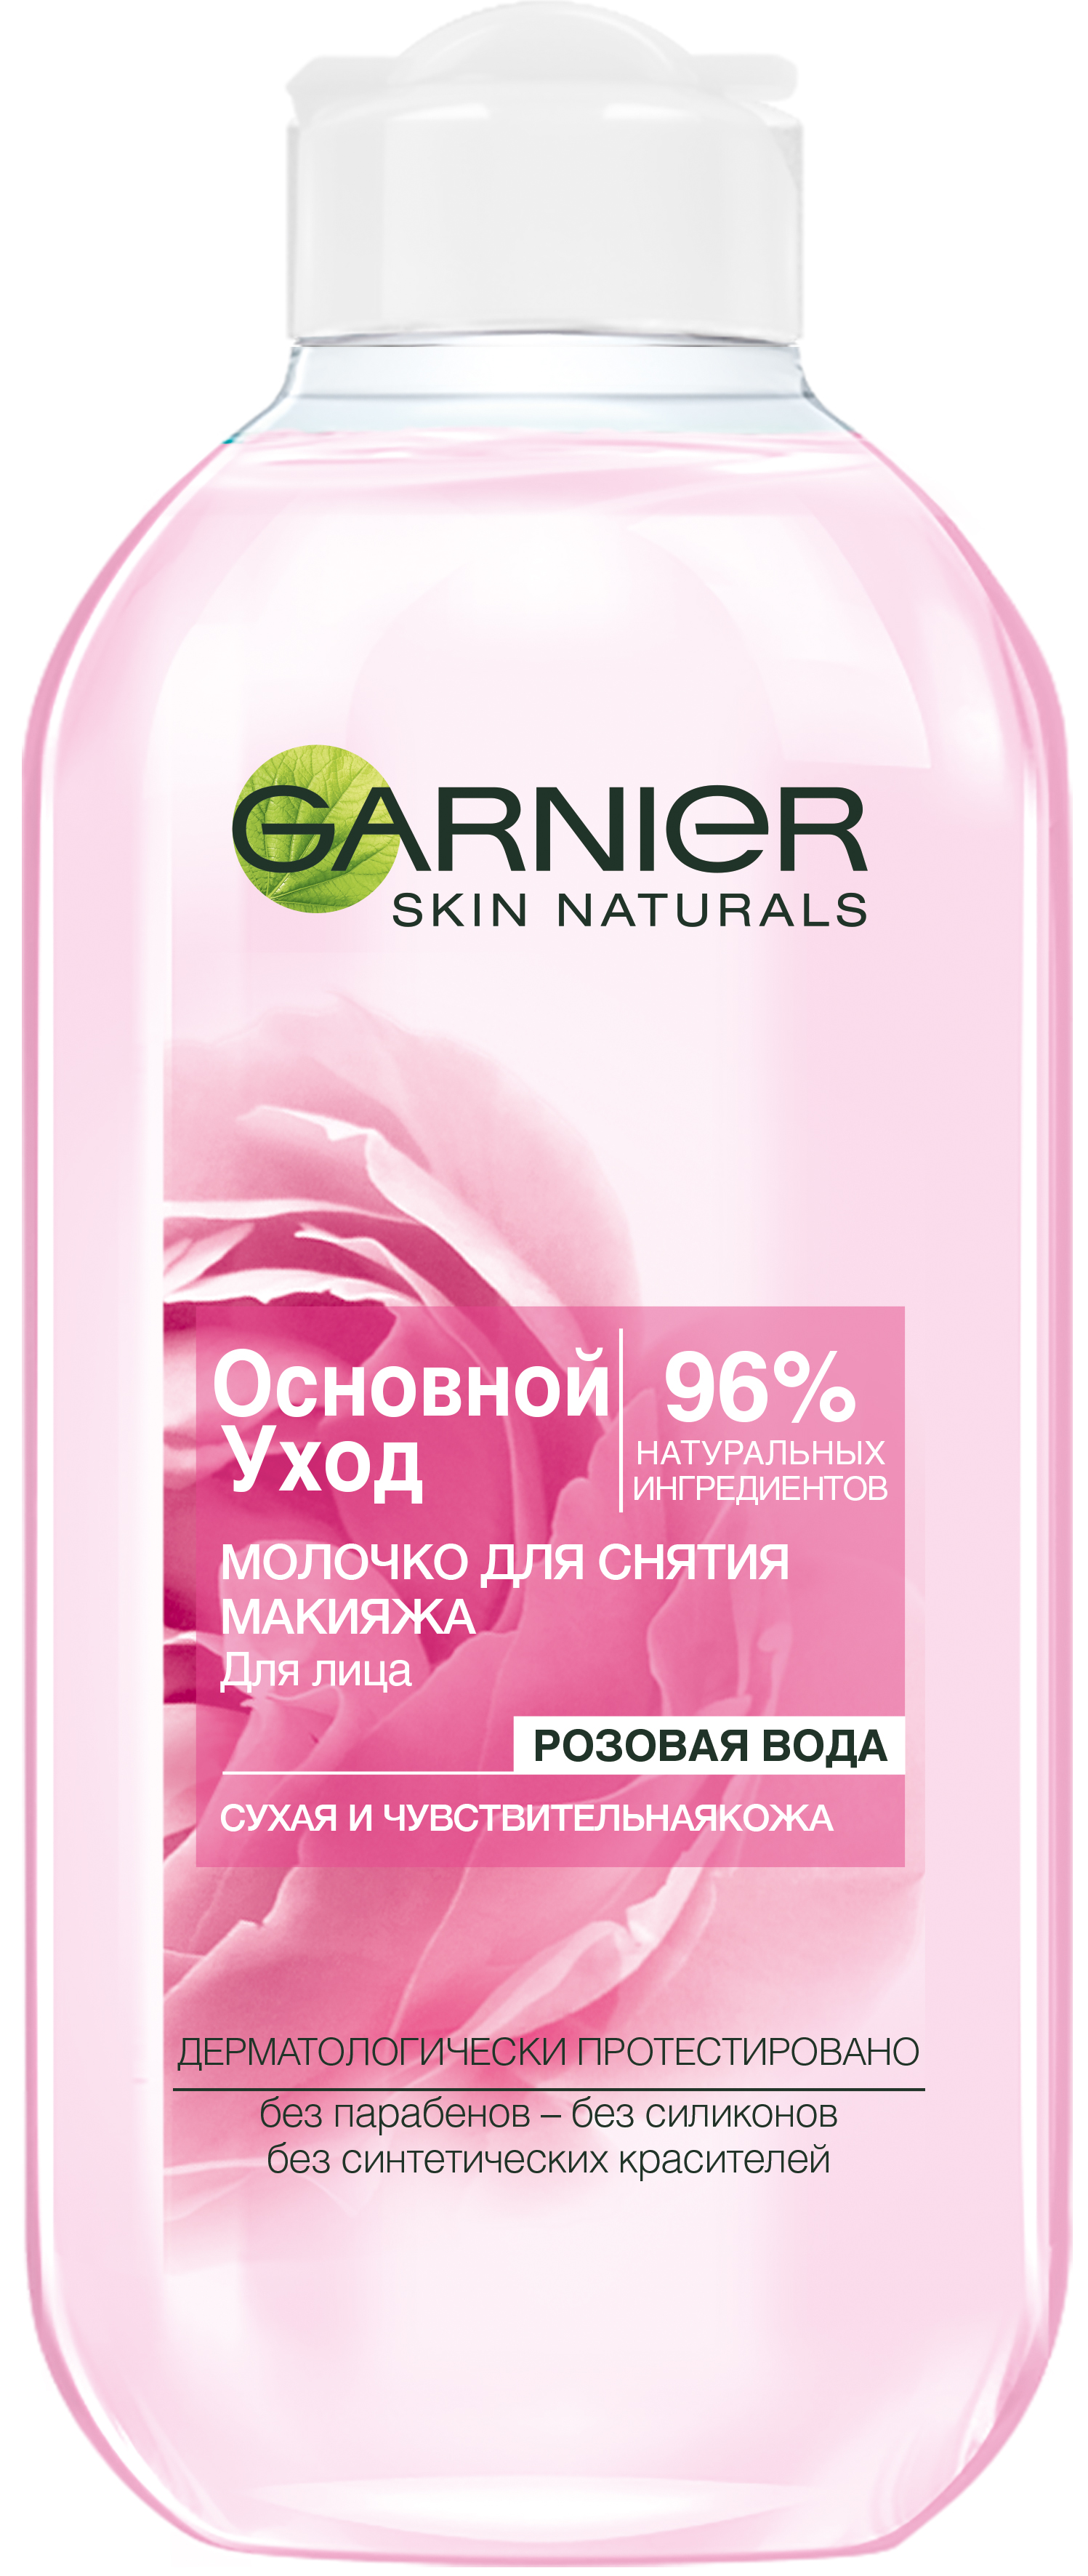 Купить Молочко Garnier Основной уход, Розовая вода для сухой и чувствительной кожи, 200 мл, основной уход для сухой и чувствительной кожи